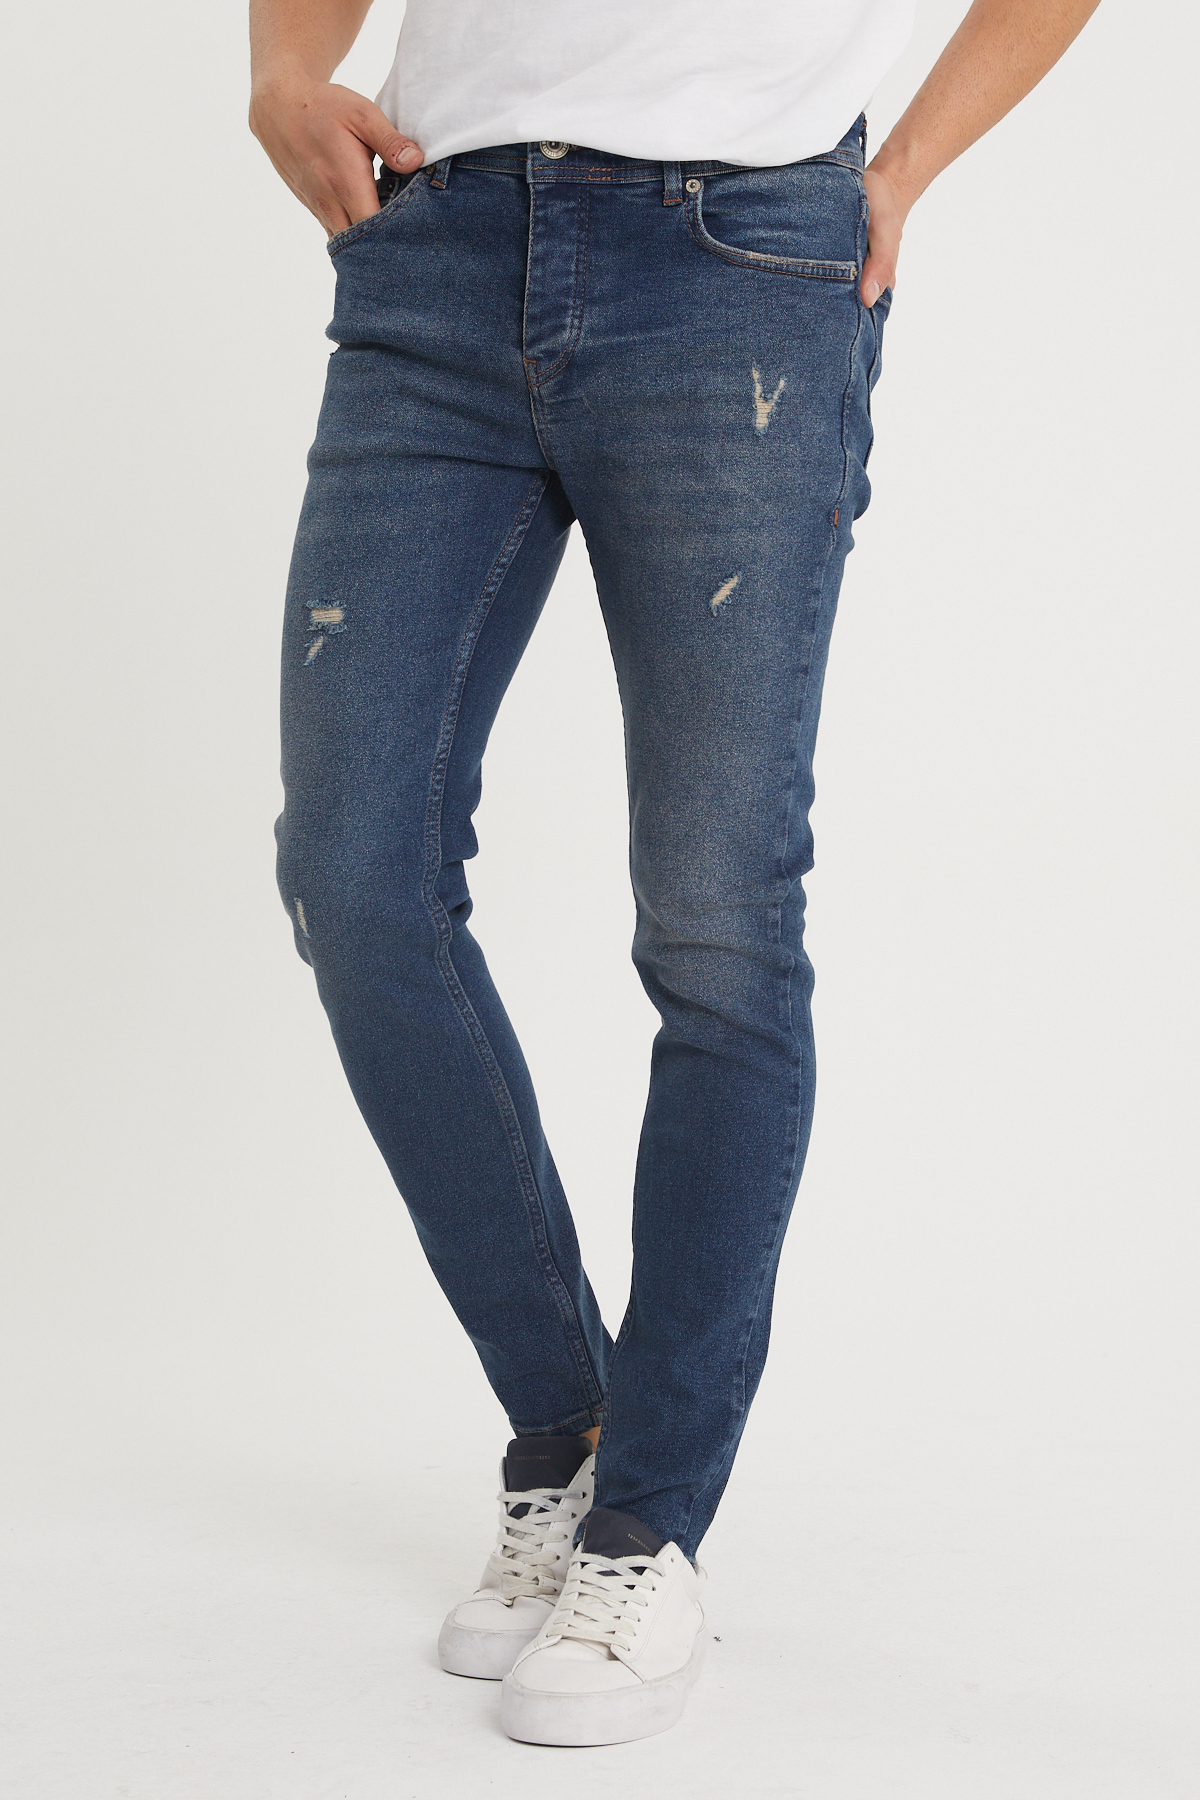 Yıkamalı Lacivert Slim Fit Jean Pantolon 1KXE5-44352-48 - 1